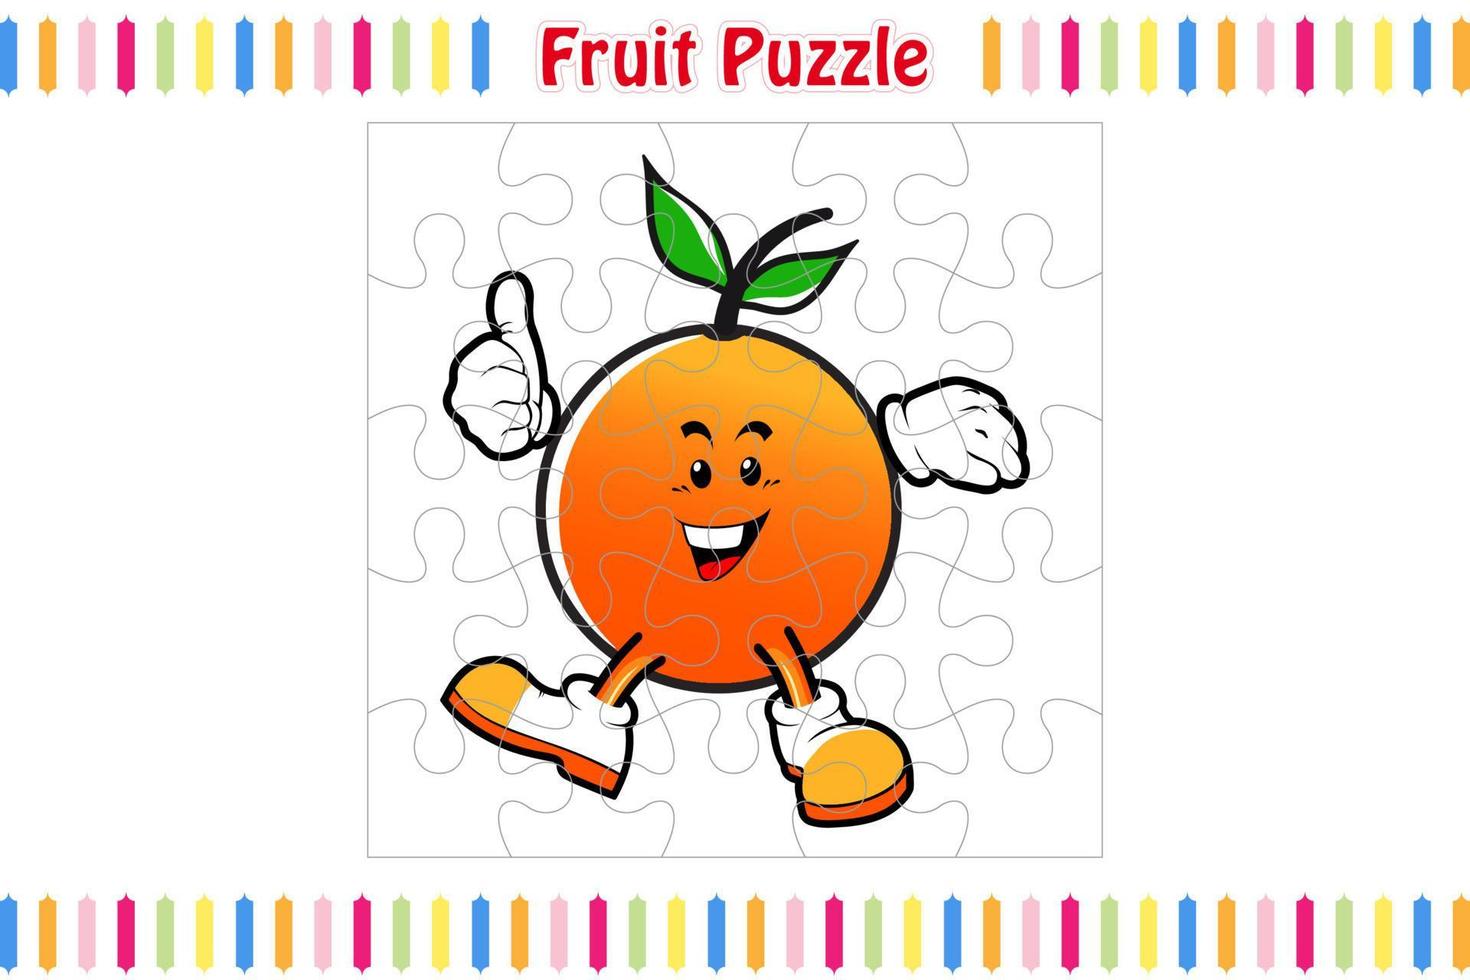 Modelo de jogo de quebra-cabeça de fotos de frutas